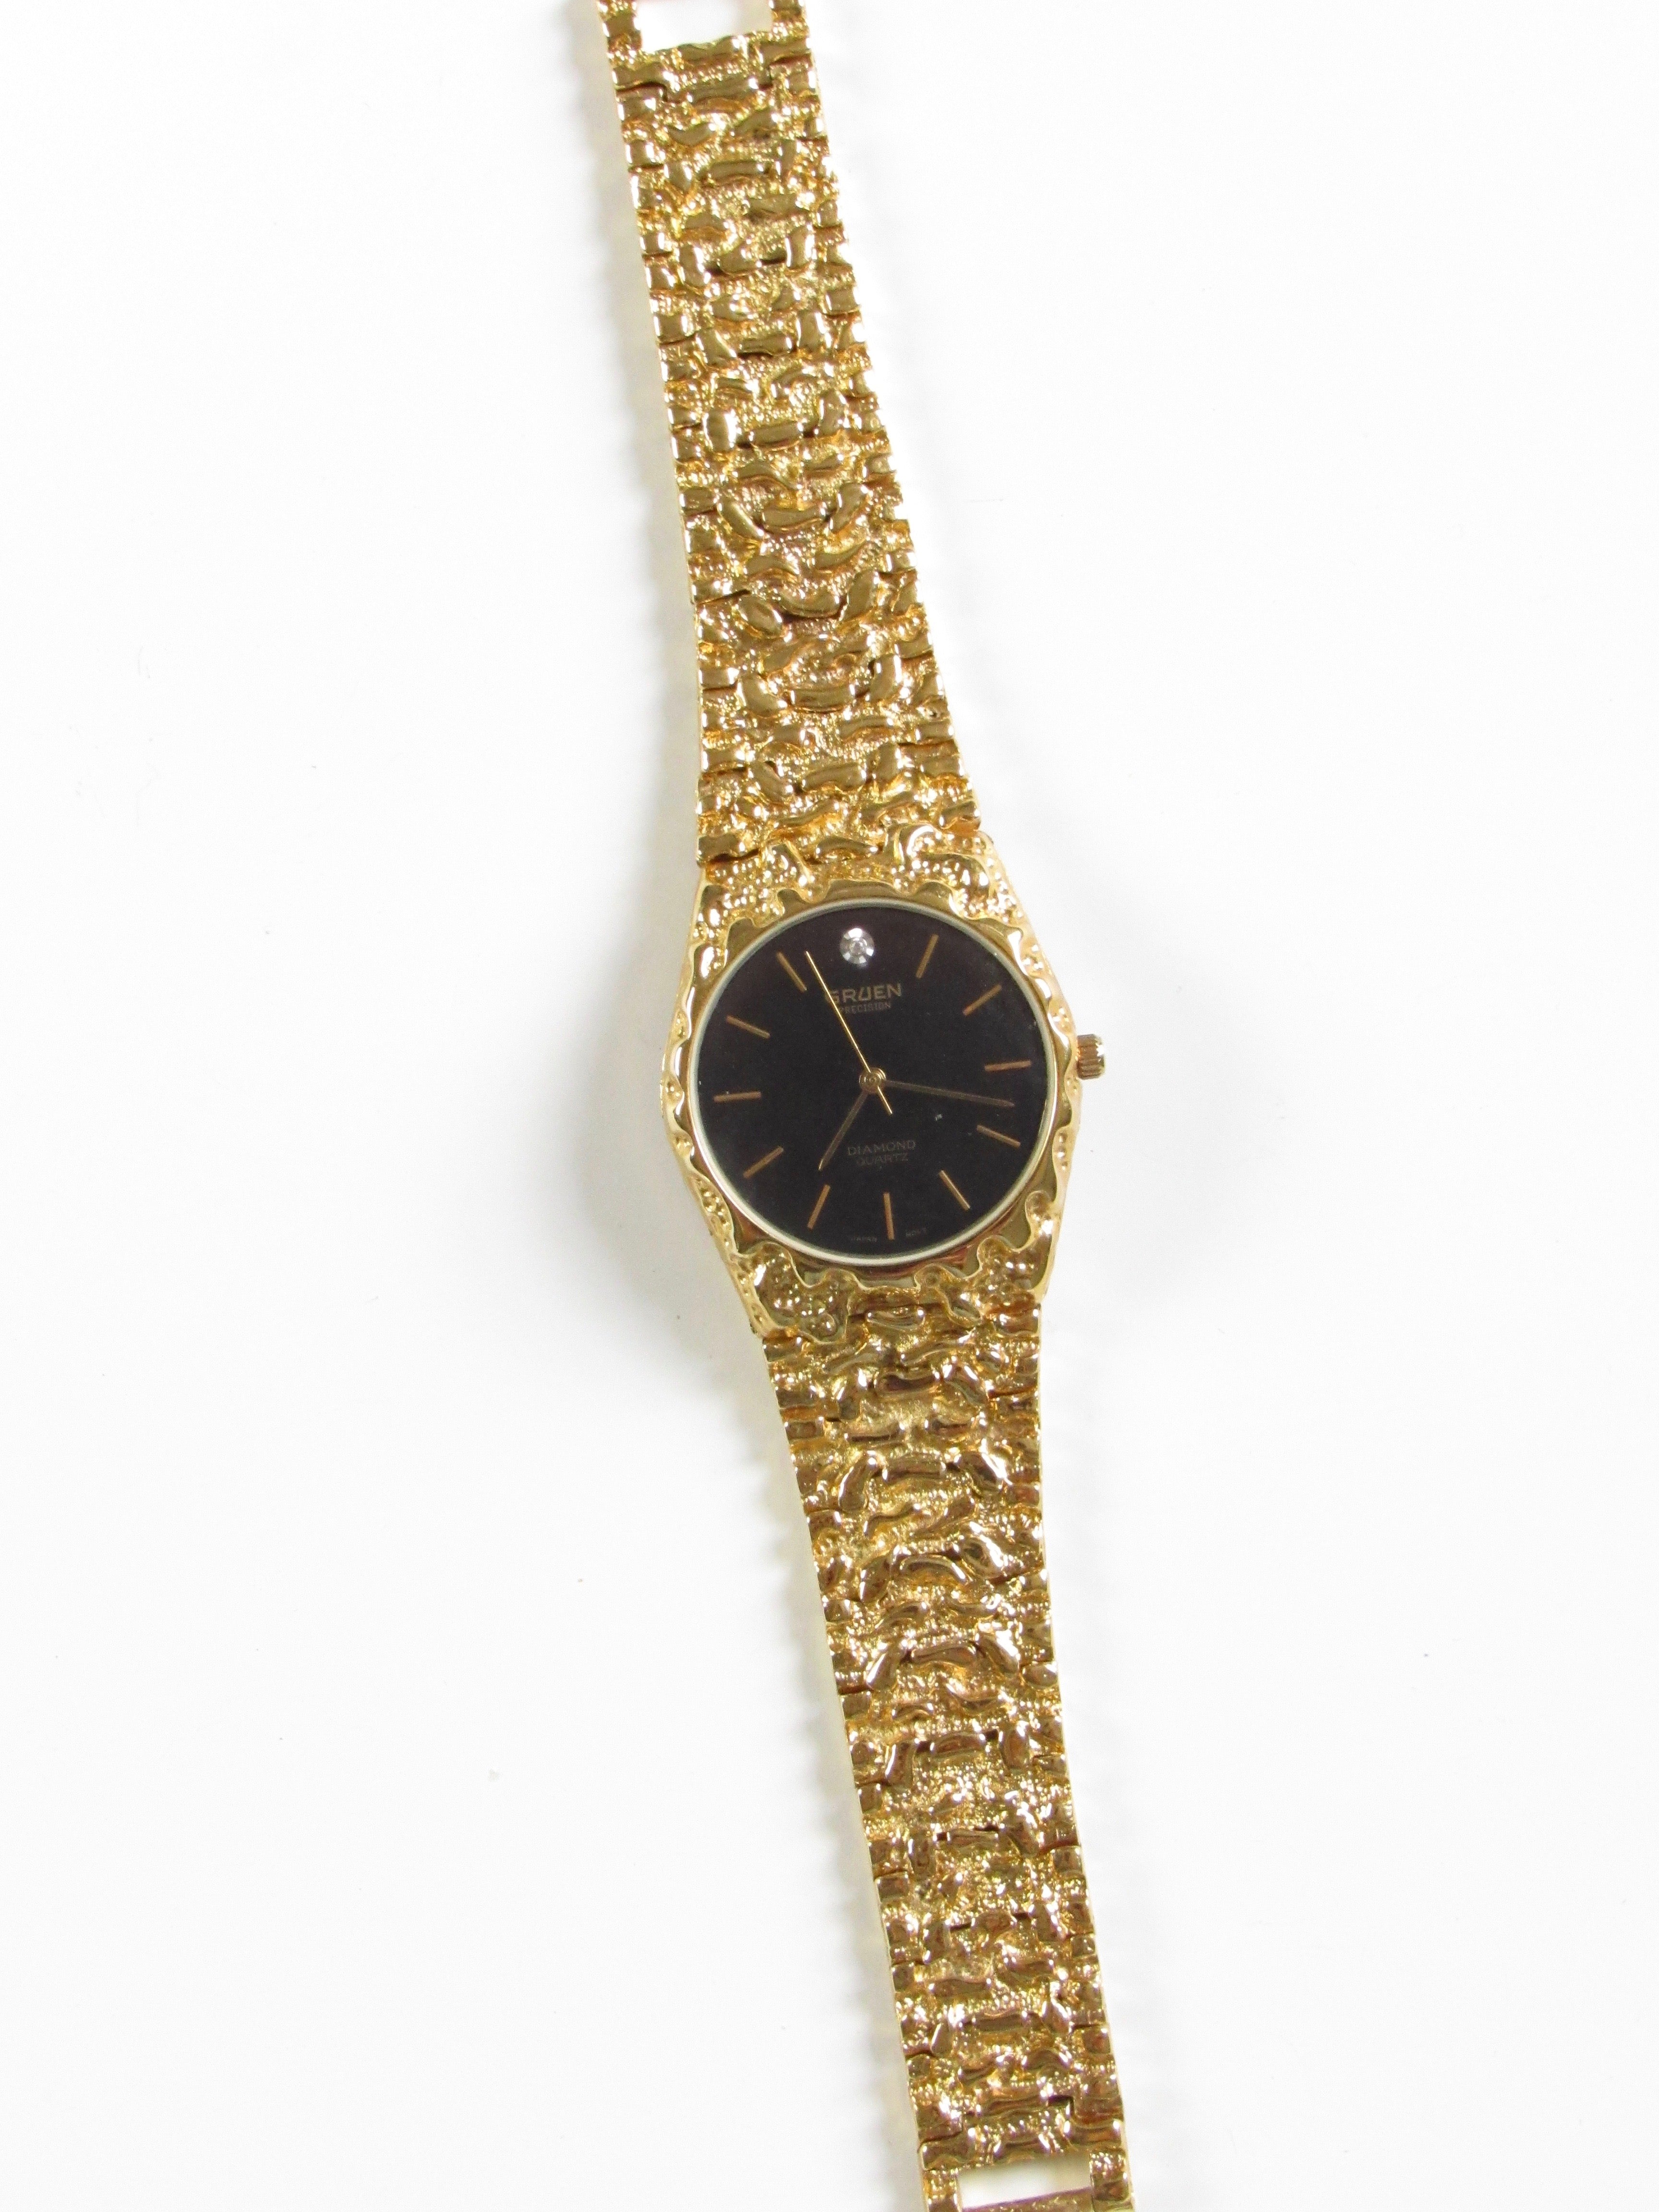 Vintage Black Dial Ladies Watch in Gold